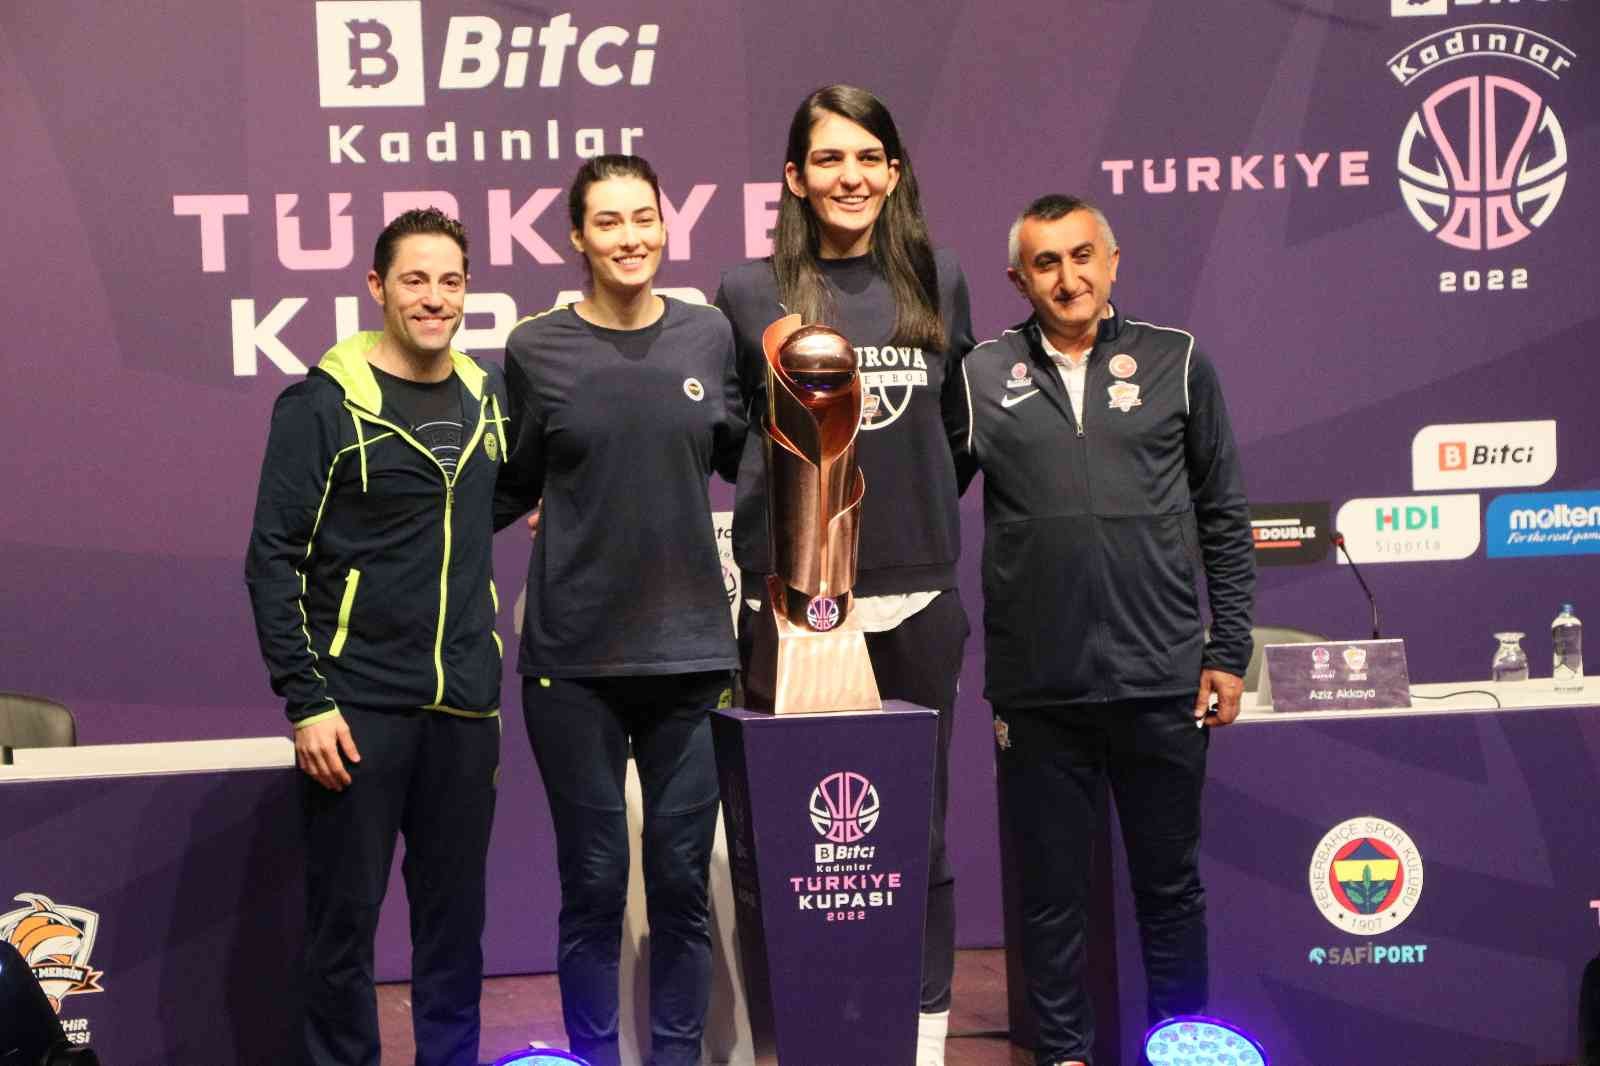 Bitci Kadınlar Türkiye Kupası 2022 Final